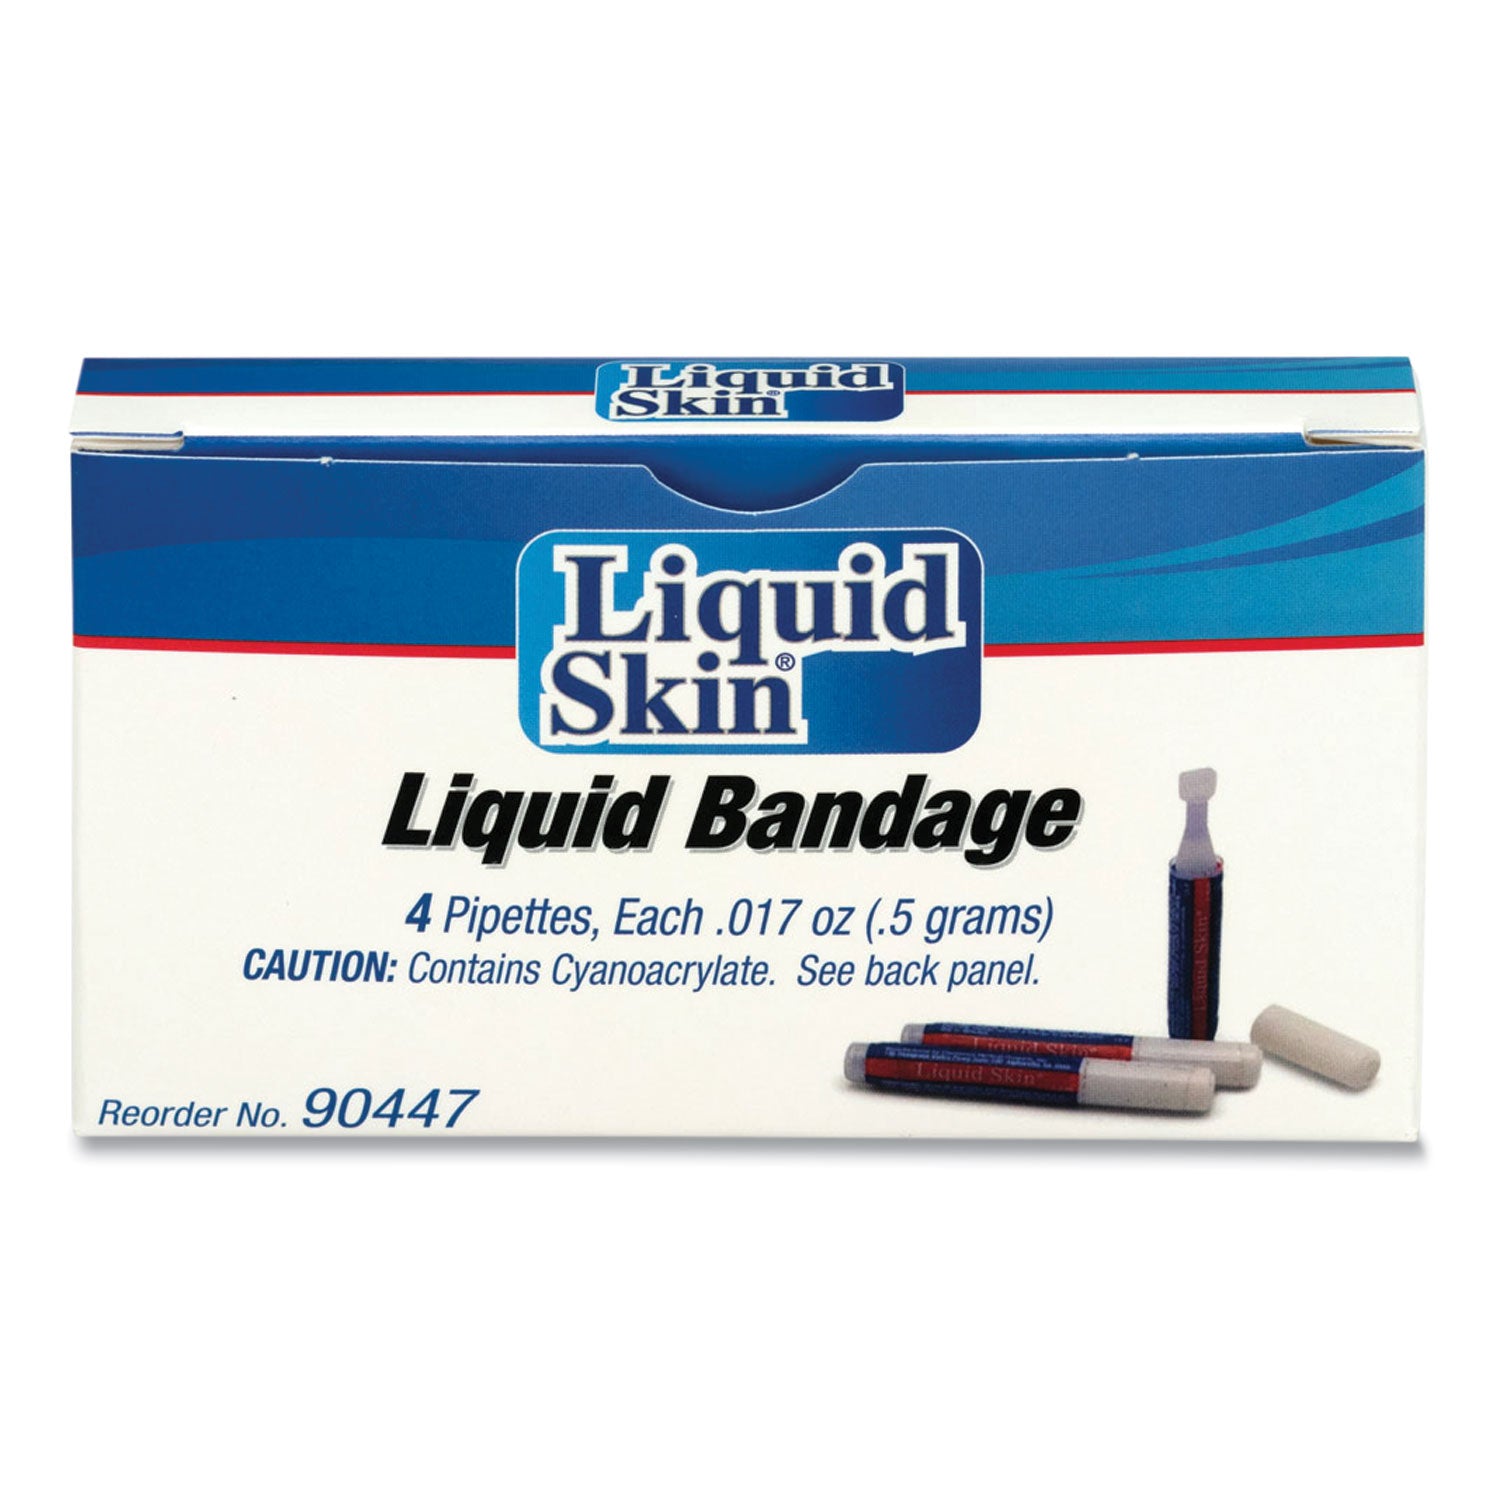 liquid-bandage-0017-oz-pipette-4-box_acm90447 - 2